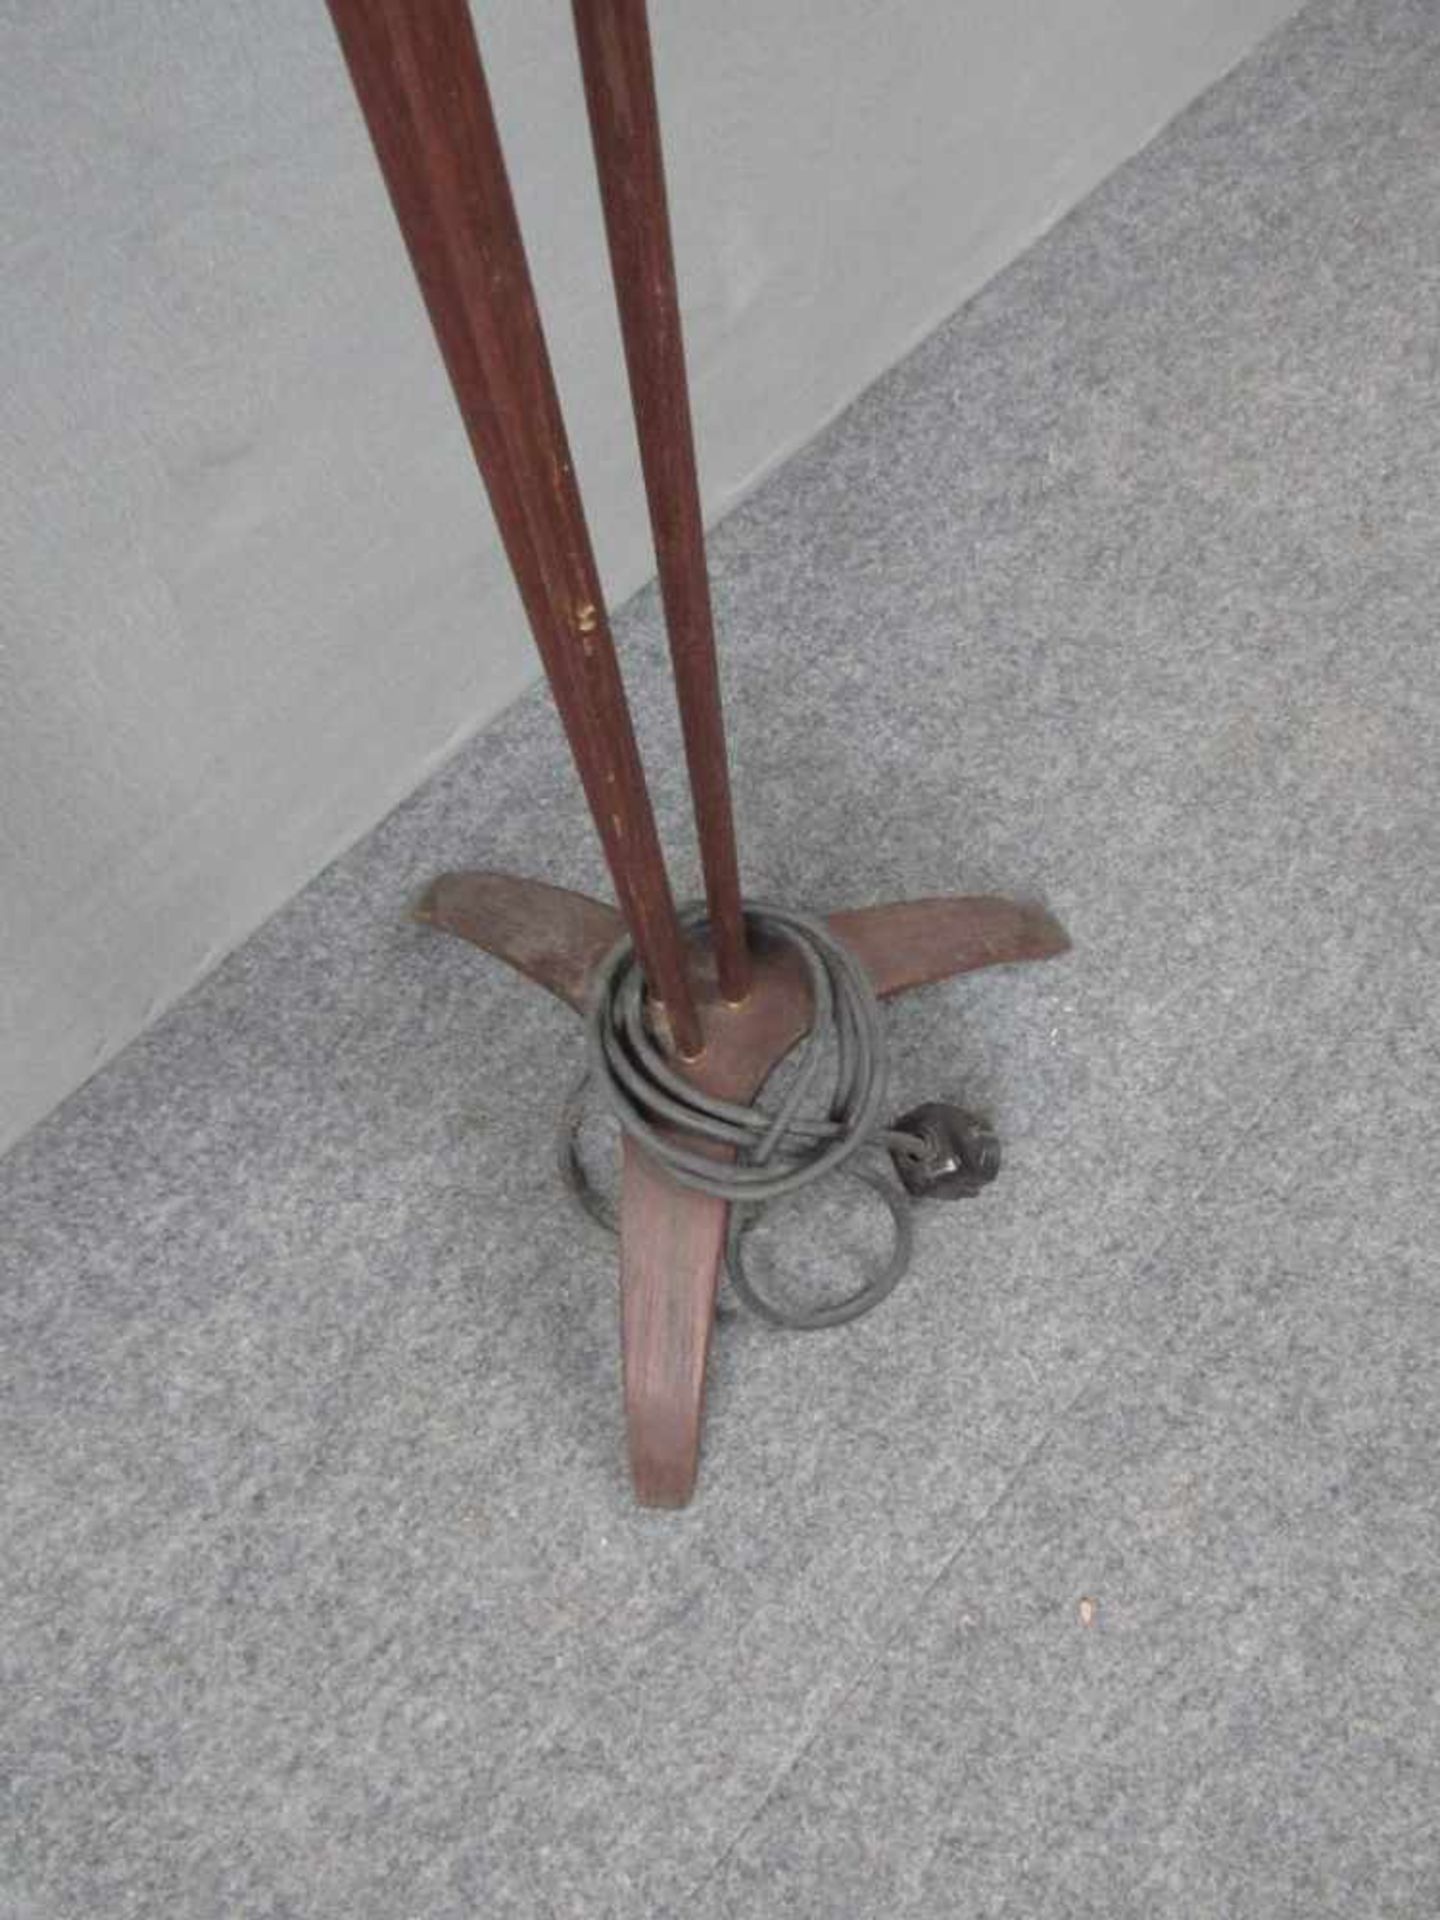 Dänish Design Stehlampe Teak drei Füße darauf drei Stangen 60er Jahre - Bild 3 aus 5